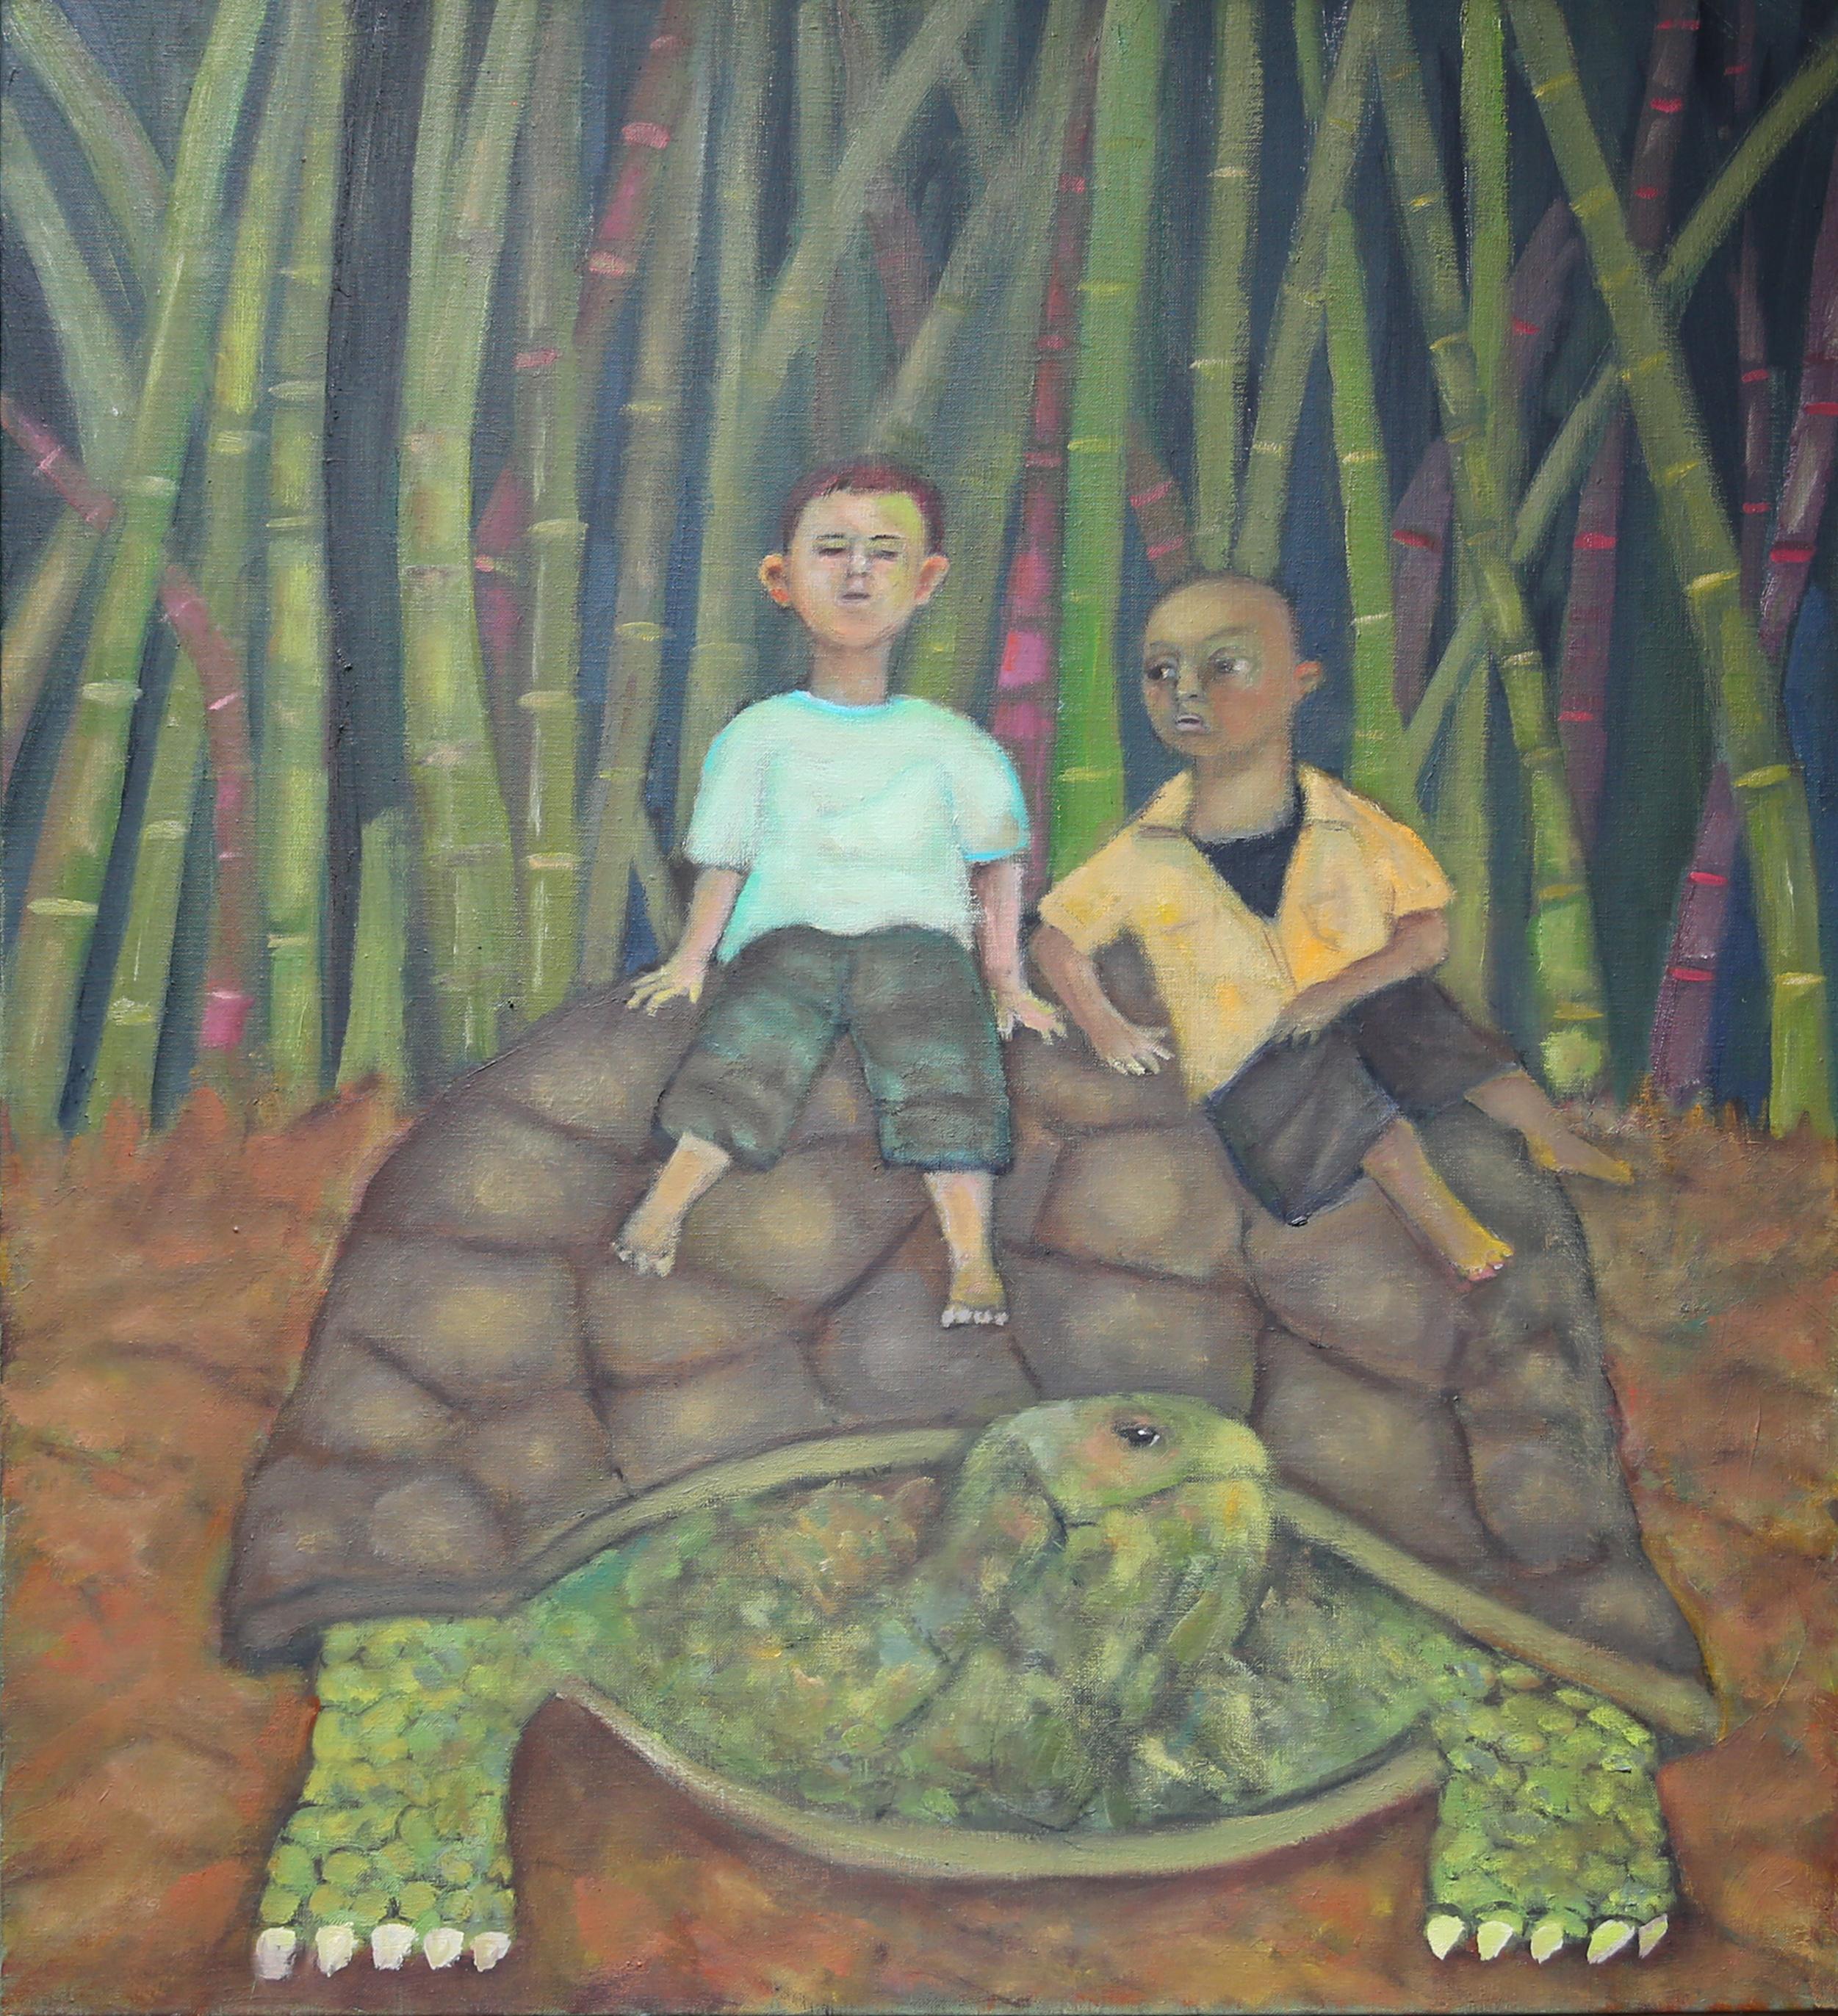 Fauteuils, tortue et garçons en bambou aux couleurs vert rêveur doux